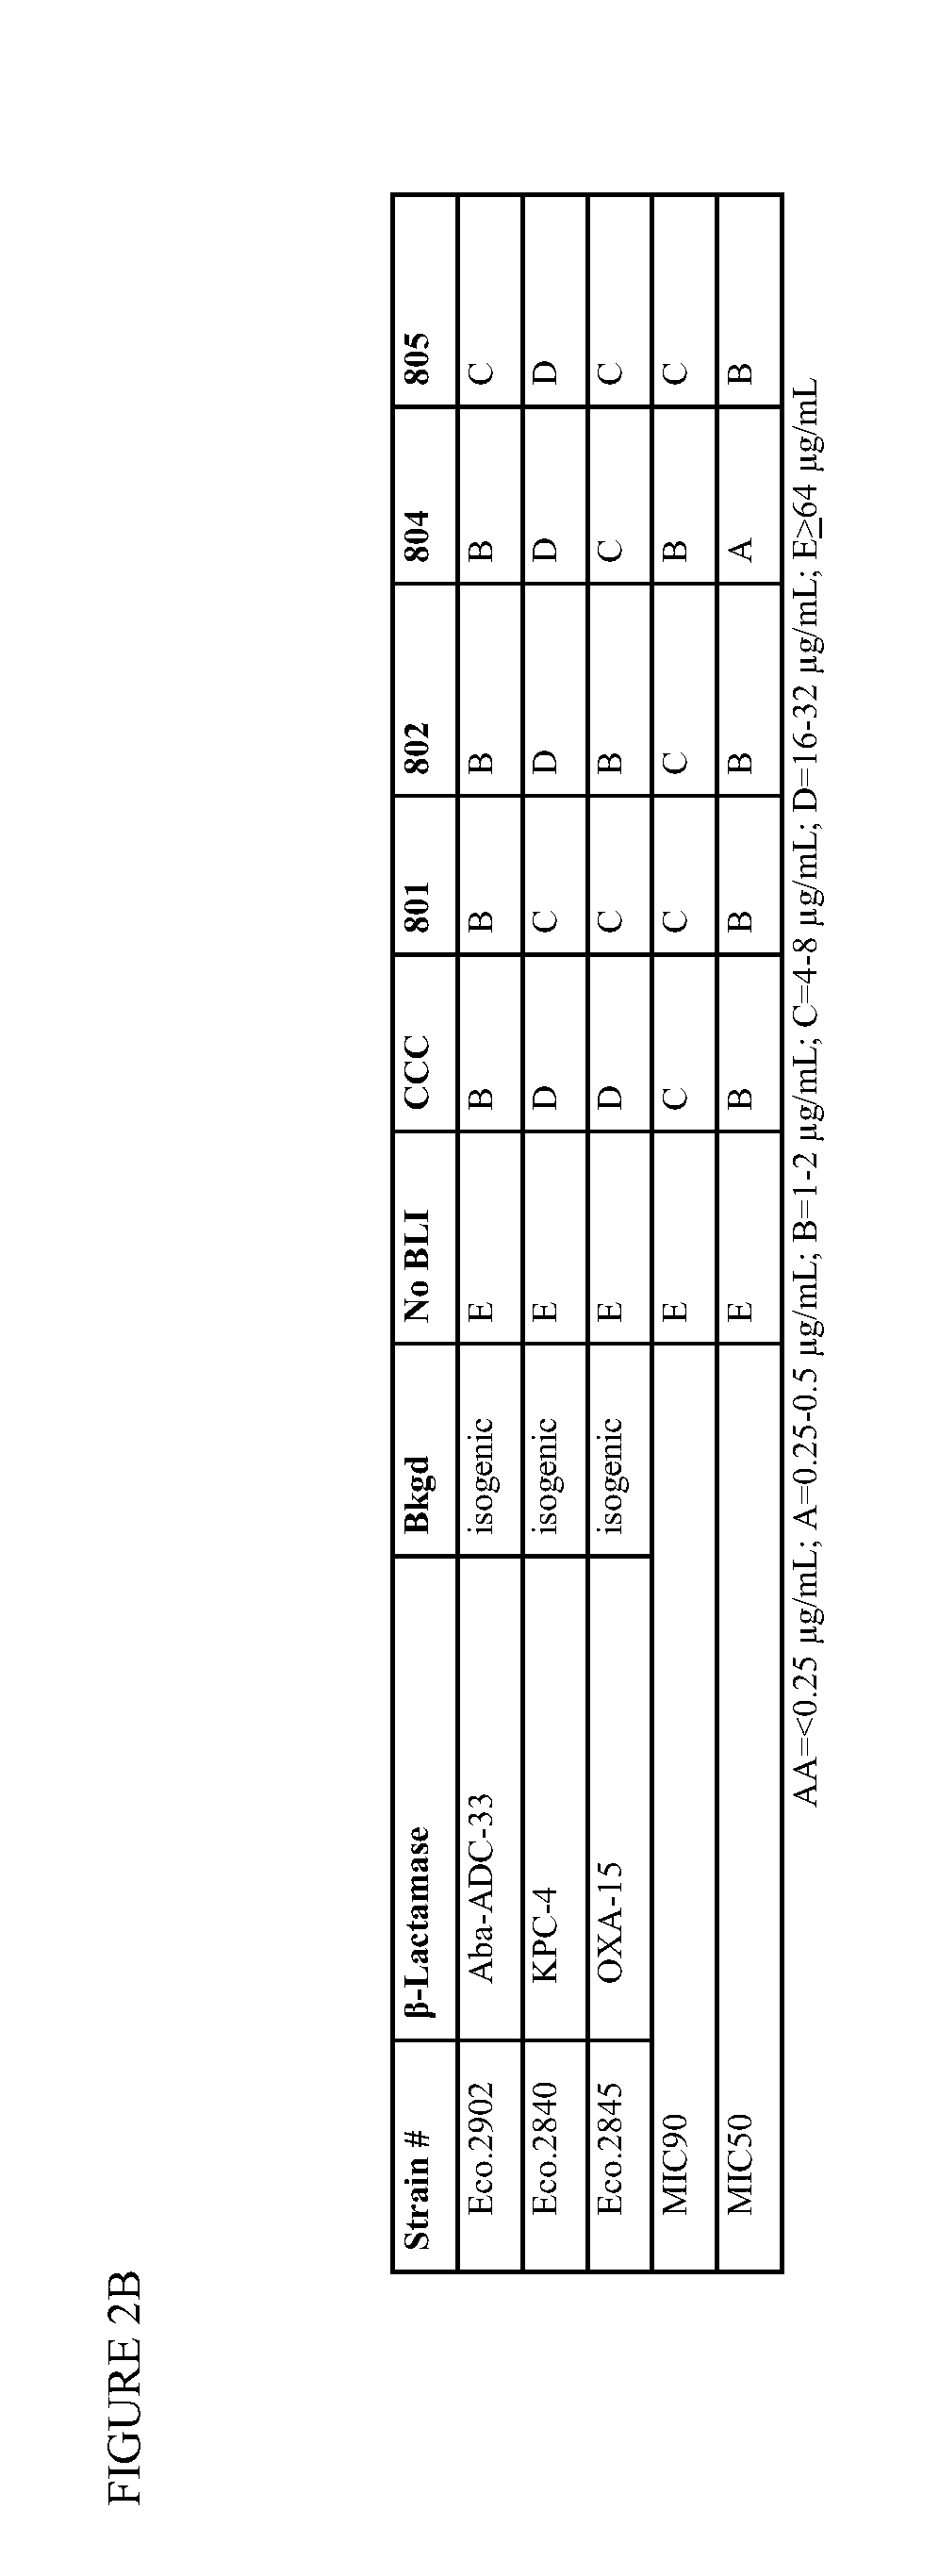 1,2,4-oxadiazole and 1,2,4-thiadiazole beta-lactamase inhibitors